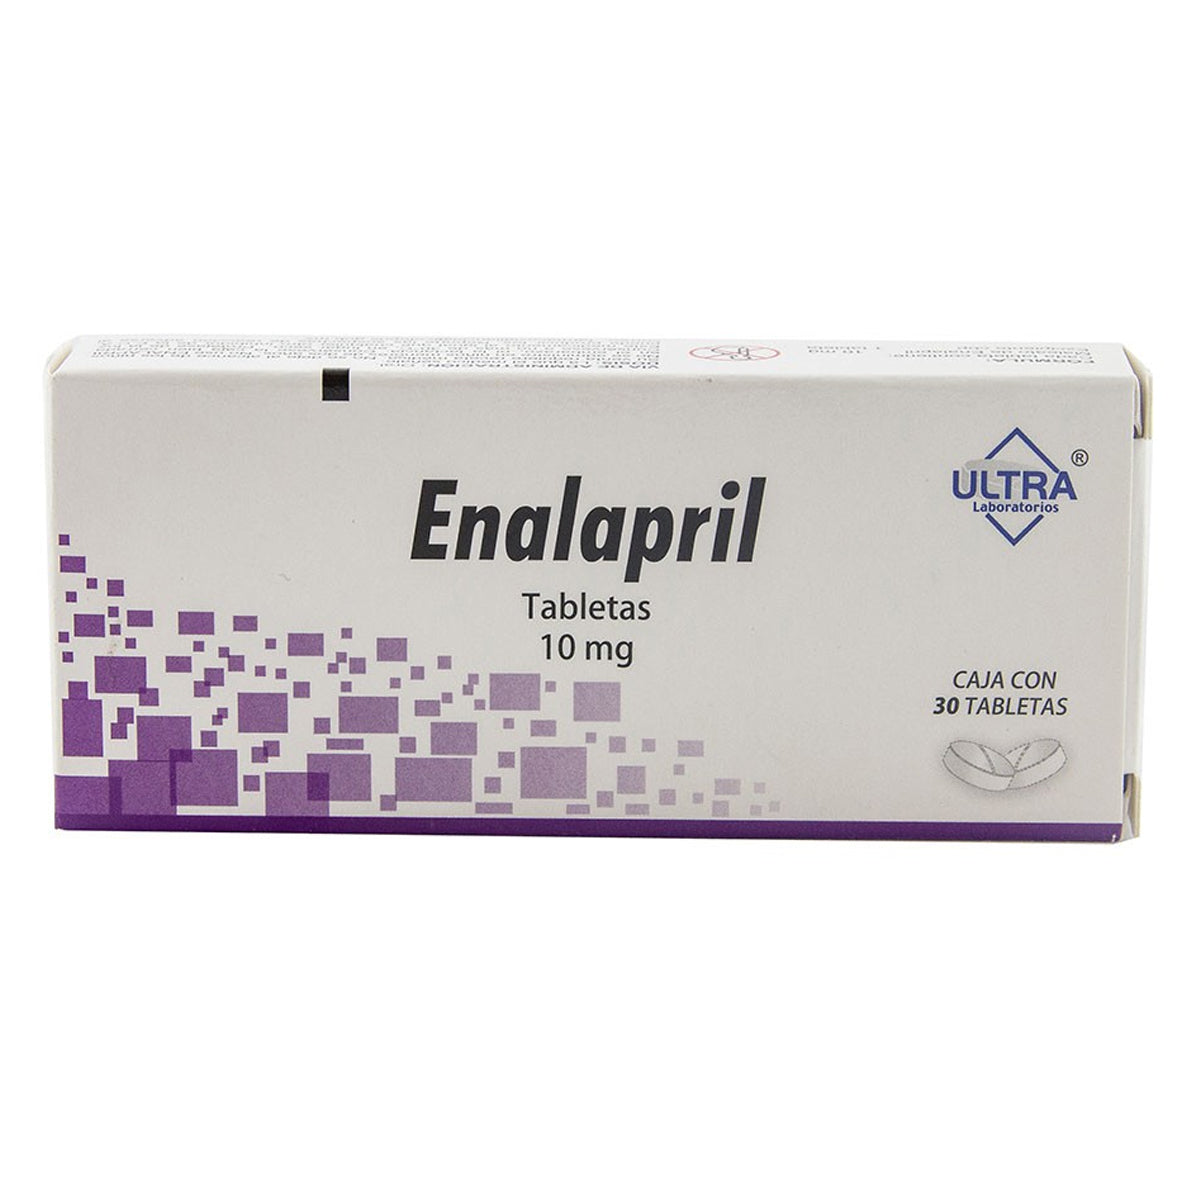 Enalapril 10 mg, 30 tabletas.